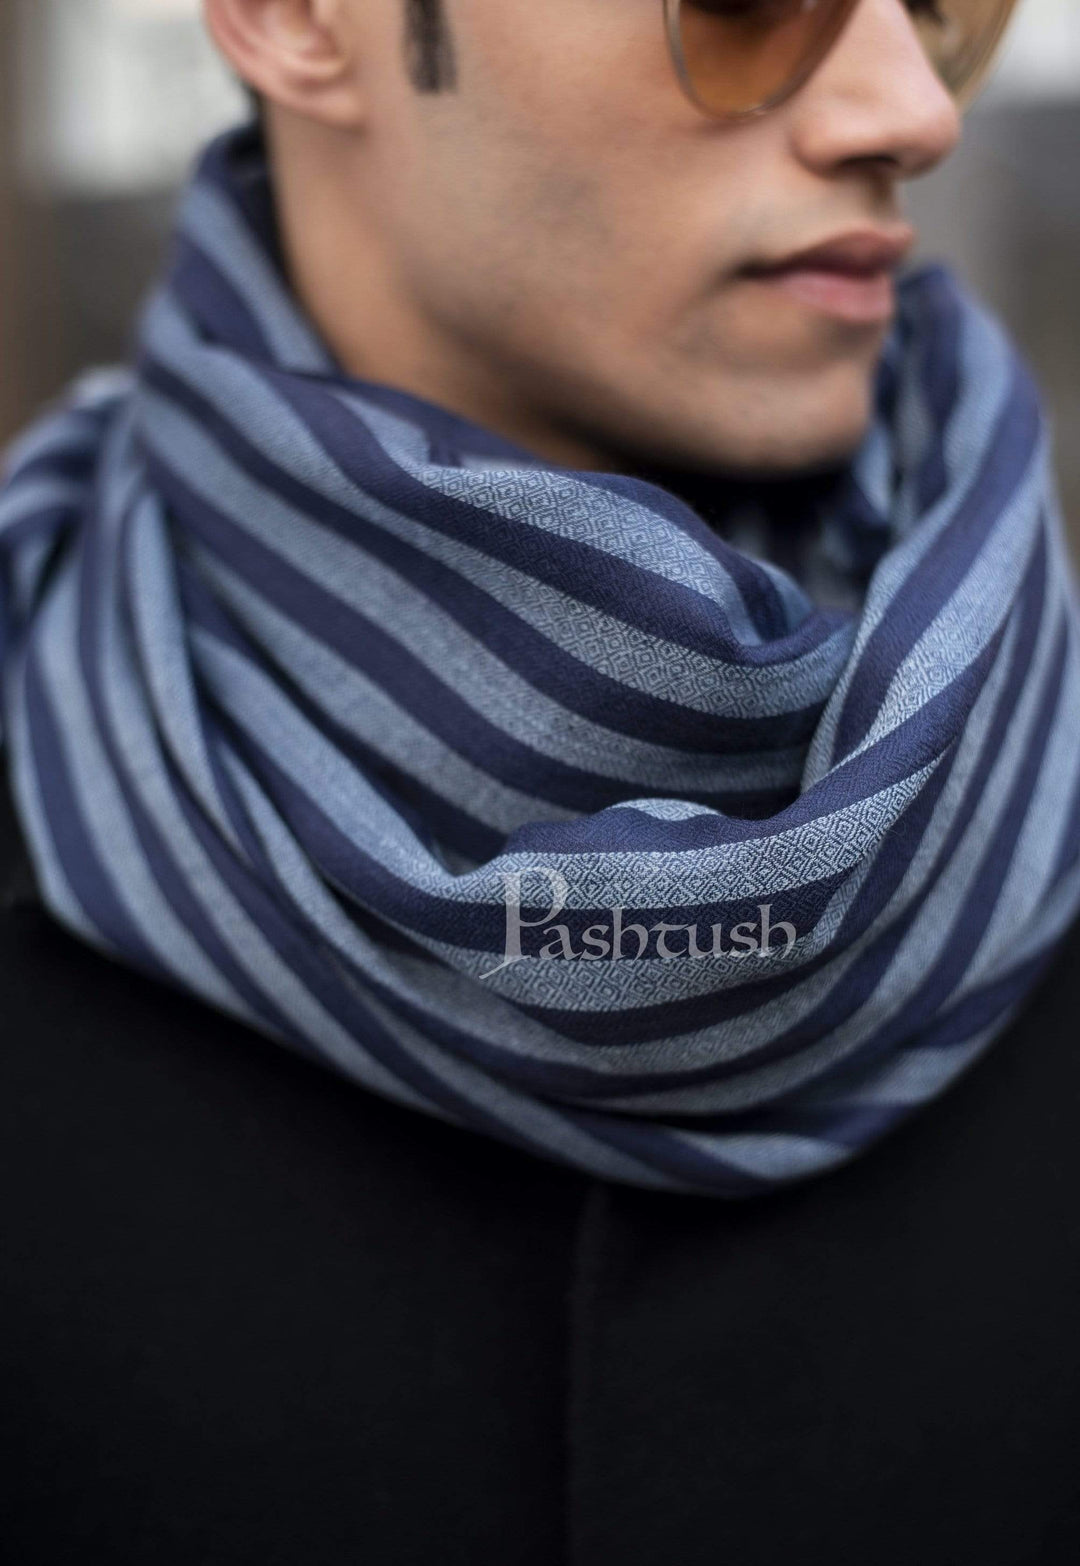 Pashtush India 70x200 Pashtush Mens Cashmere and Wool Scarf, Striped Cobalt Blue